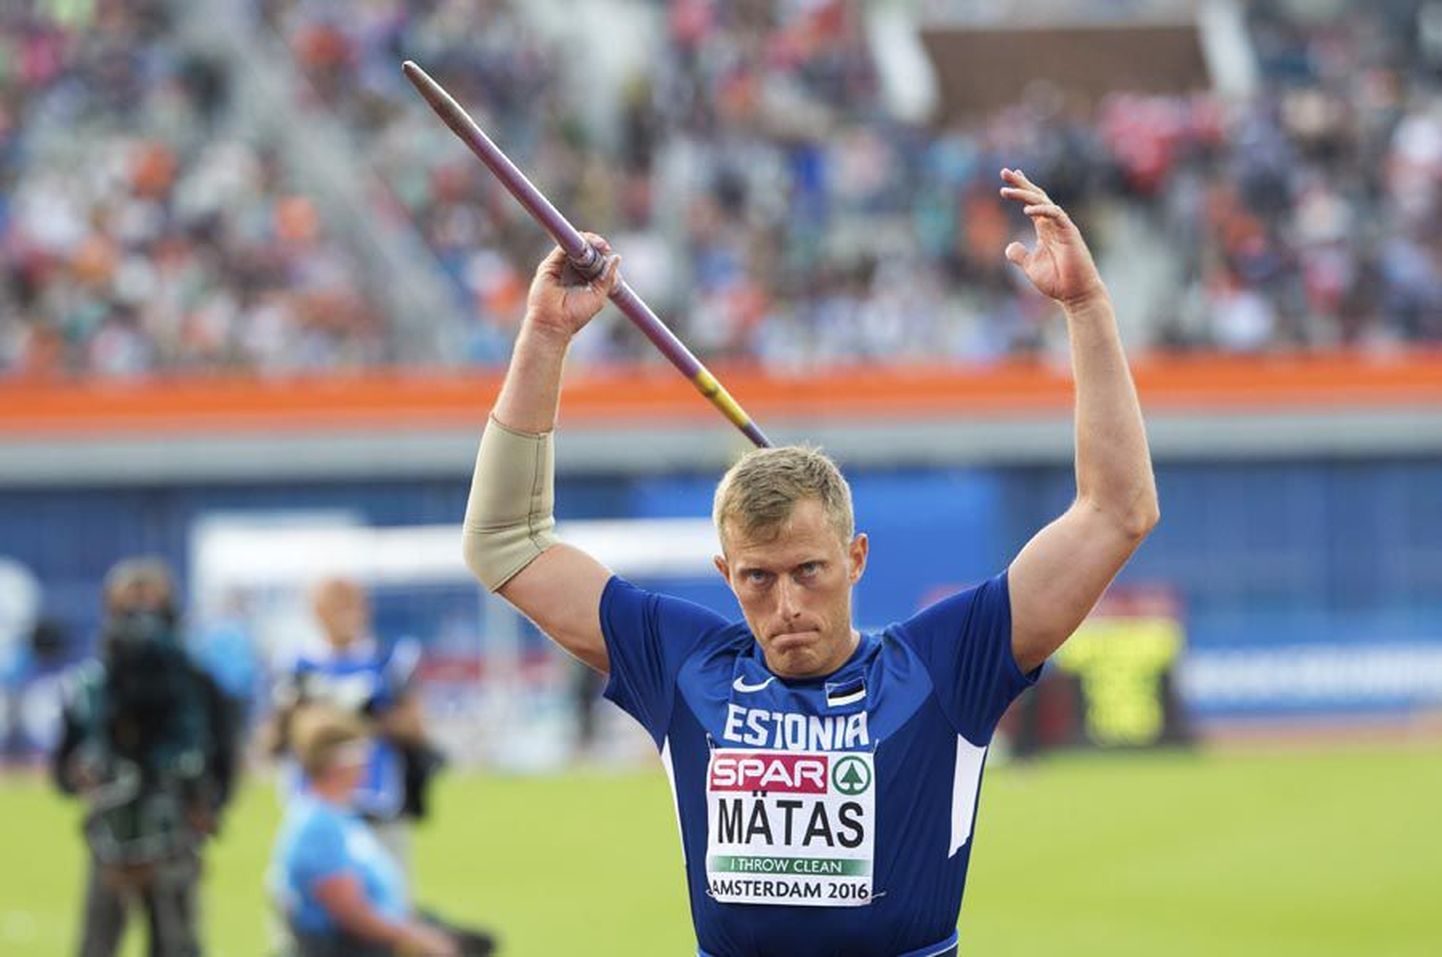 Viljandimaalt pärit odaviskaja Risto Mätas teenis Euroopa meistrivõistlustel oma karjääri tiitlivõistluste parima, neljanda koha.